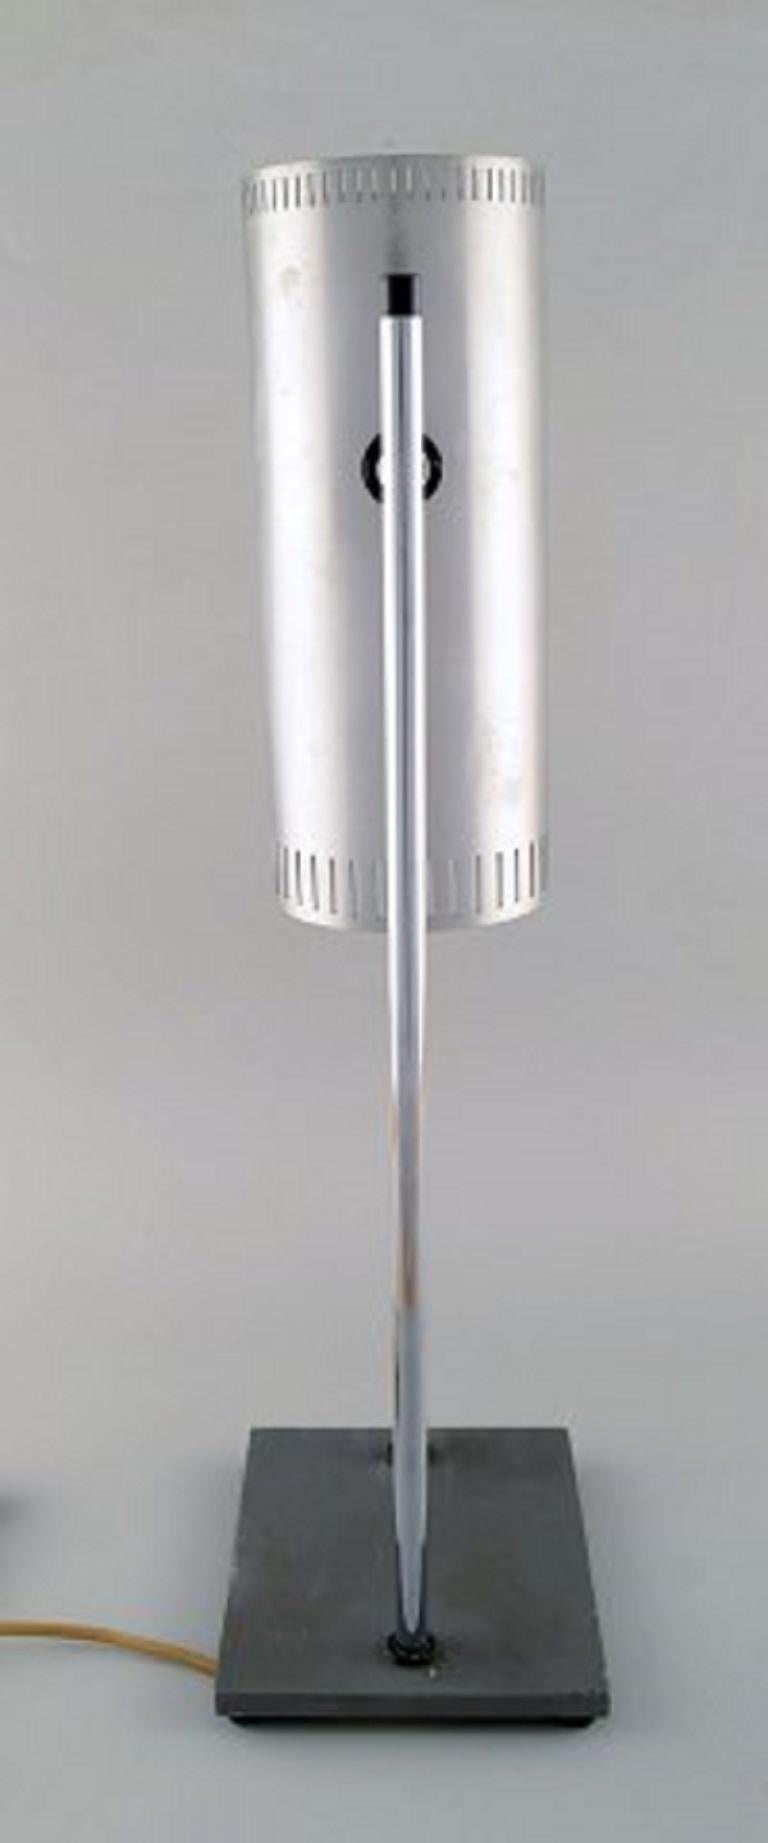 Jo Hammerborg für Fog & Mørup. Posaunentischlampe aus verchromtem und poliertem Stahl mit verstellbarem Schirm, Sockel aus grau lackiertem Metall, 1960er-1970er Jahre.
Maße: 56 x 17,5 cm.
In gutem Zustand mit Gebrauchsspuren.